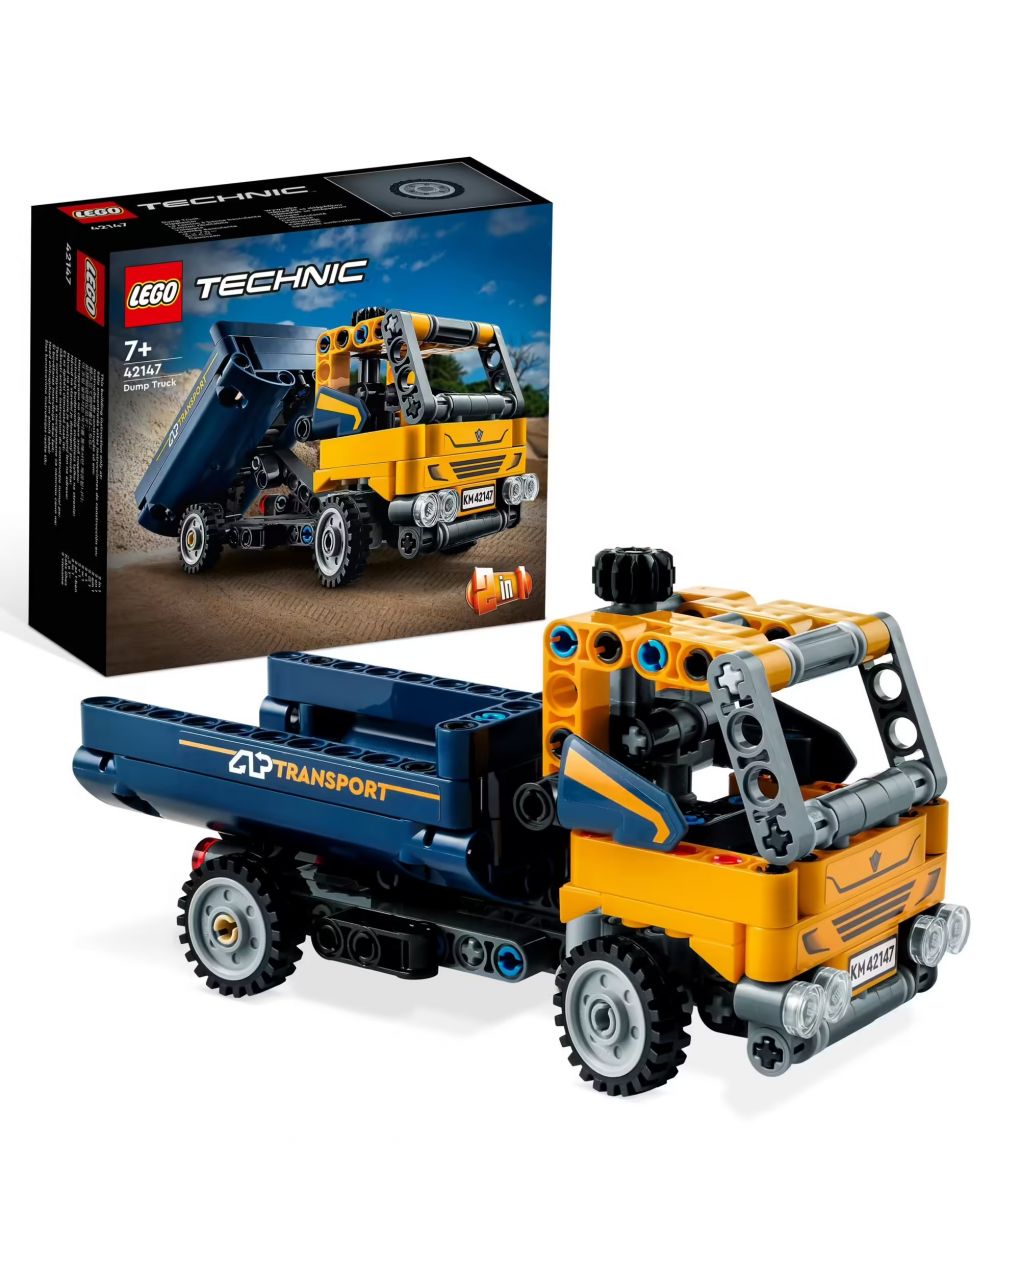 Camion ribaltabile set 2 in 1 con camioncino ed escavatore giocattolo - lego technic